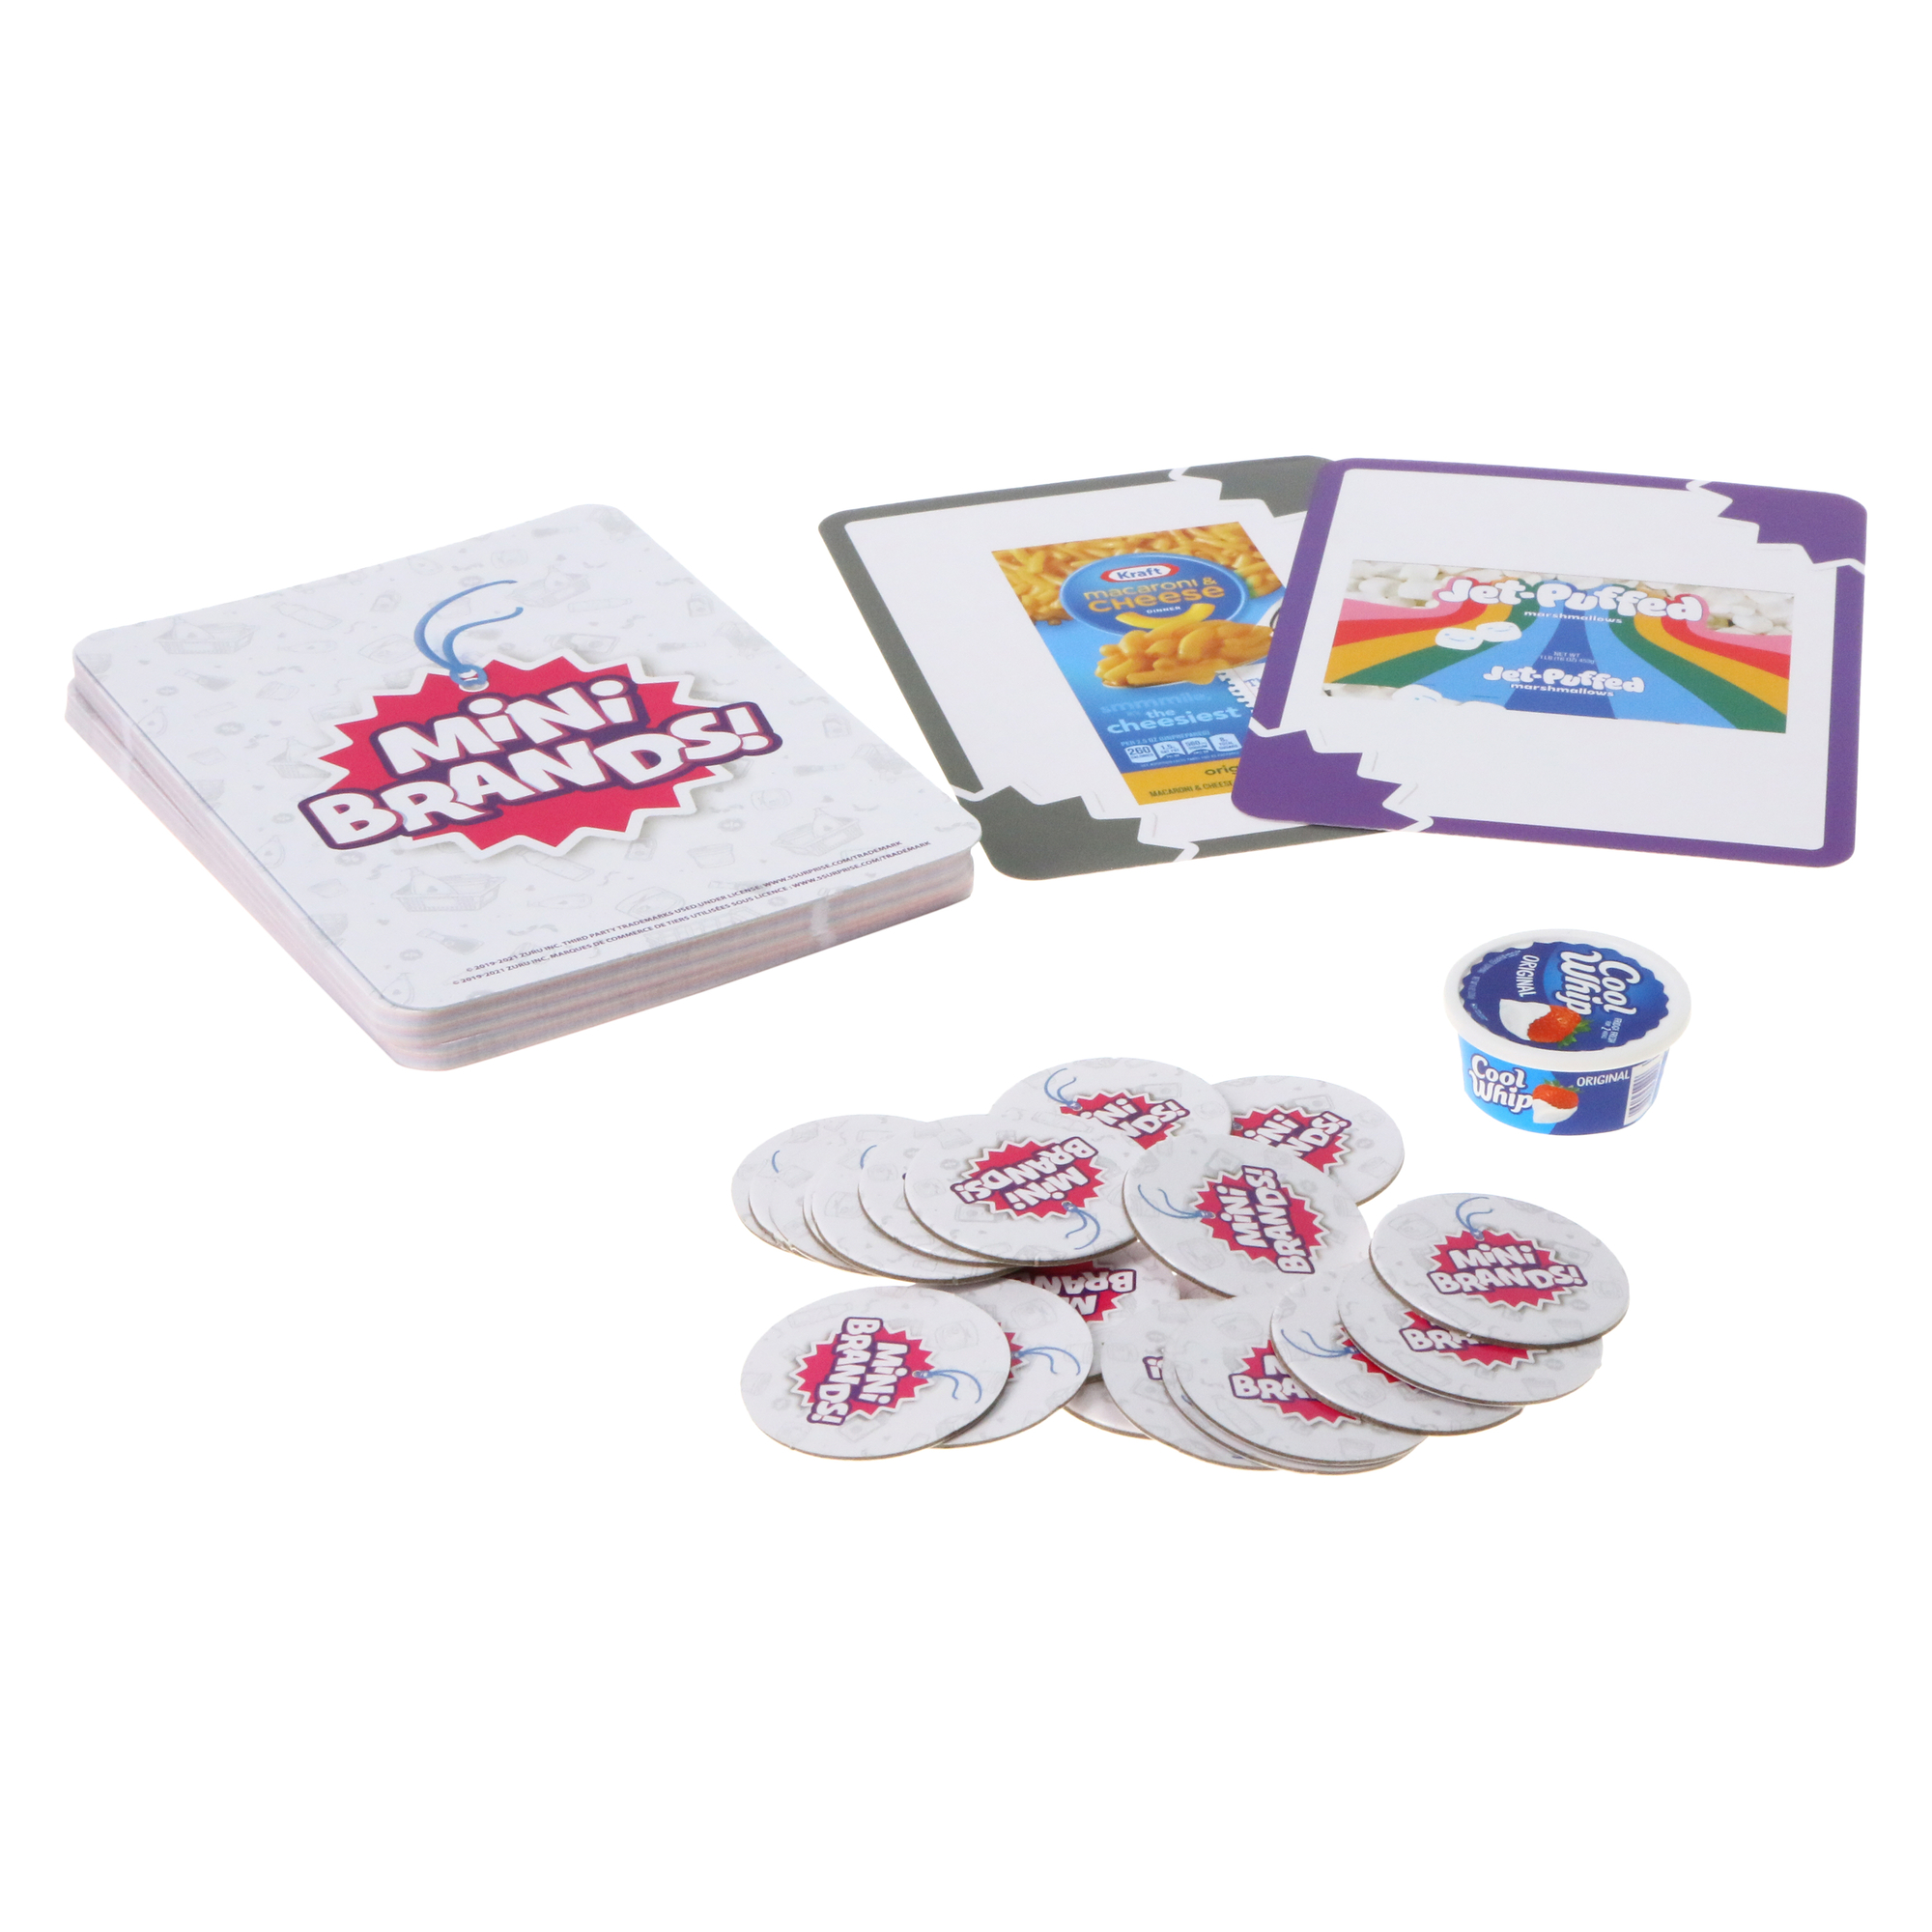 Zuru 5 Surprise Mini Brands Licensed Card Game, Assorted